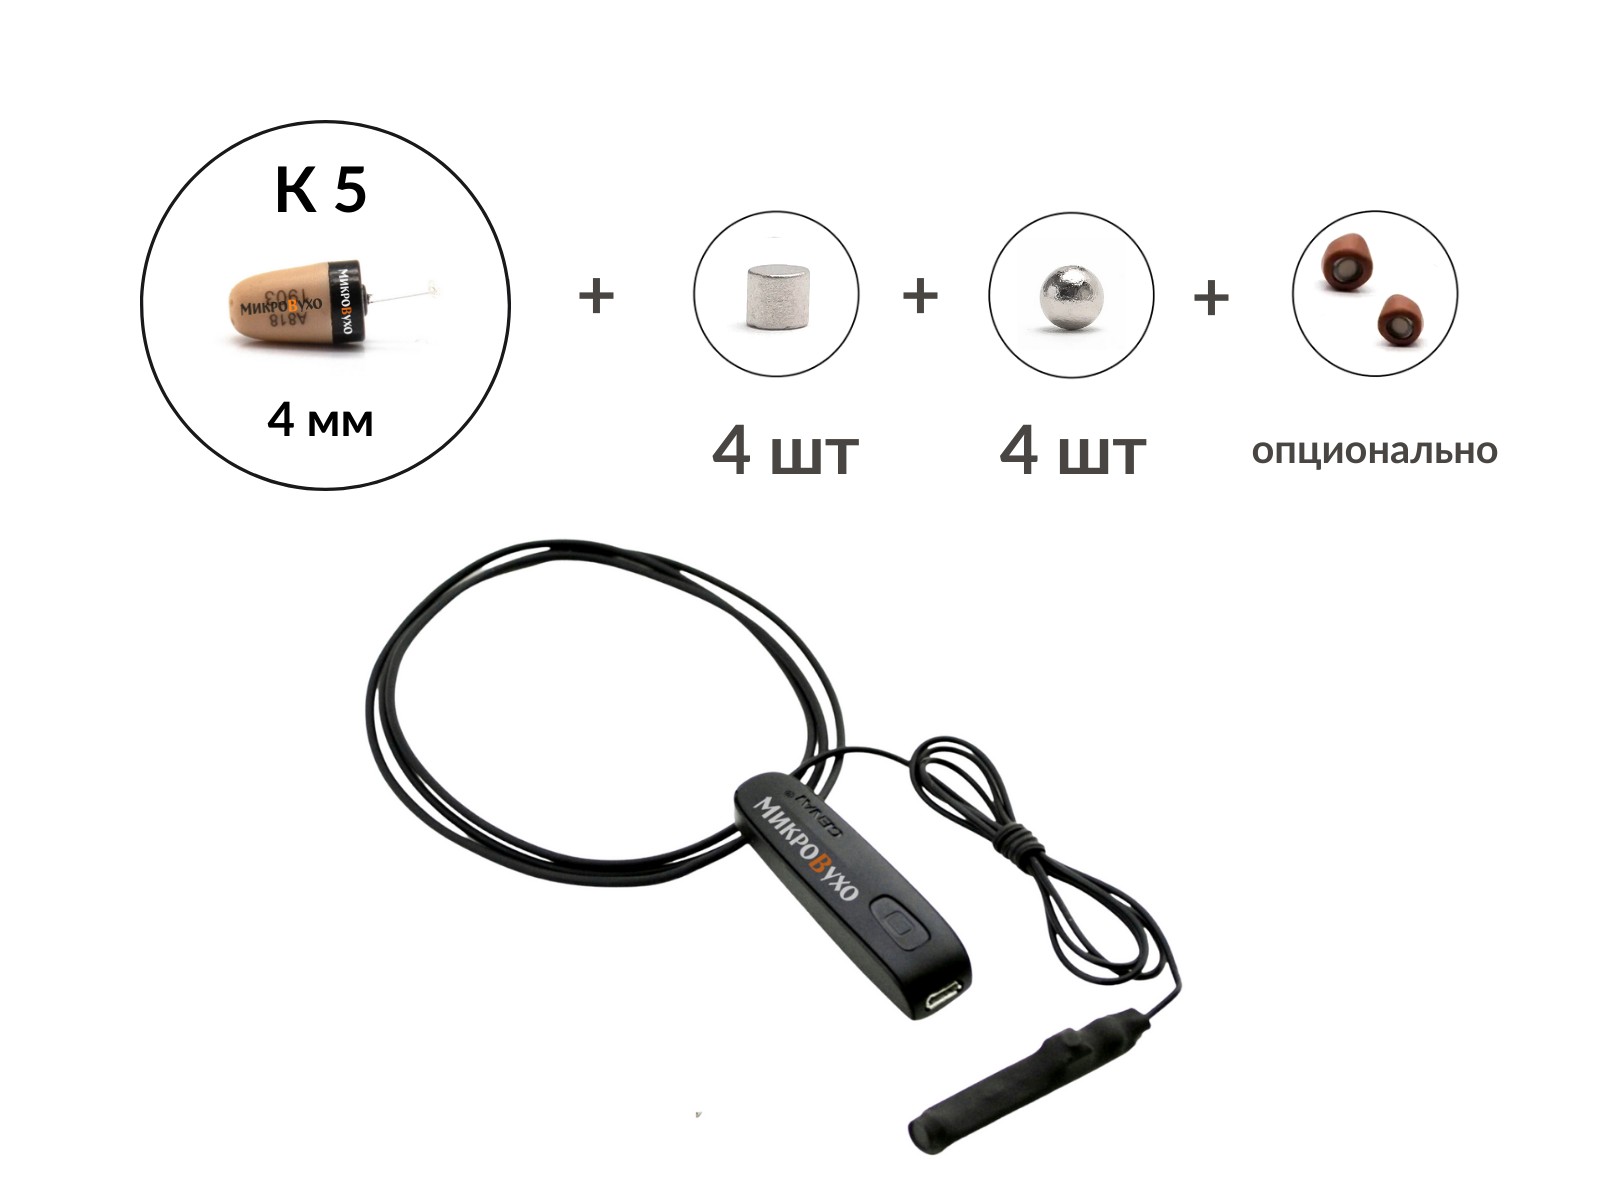 Bluetooth Basic с кнопкой-пищалкой, капсулой  K5 4 мм и магнитами 2 мм - изображение 4